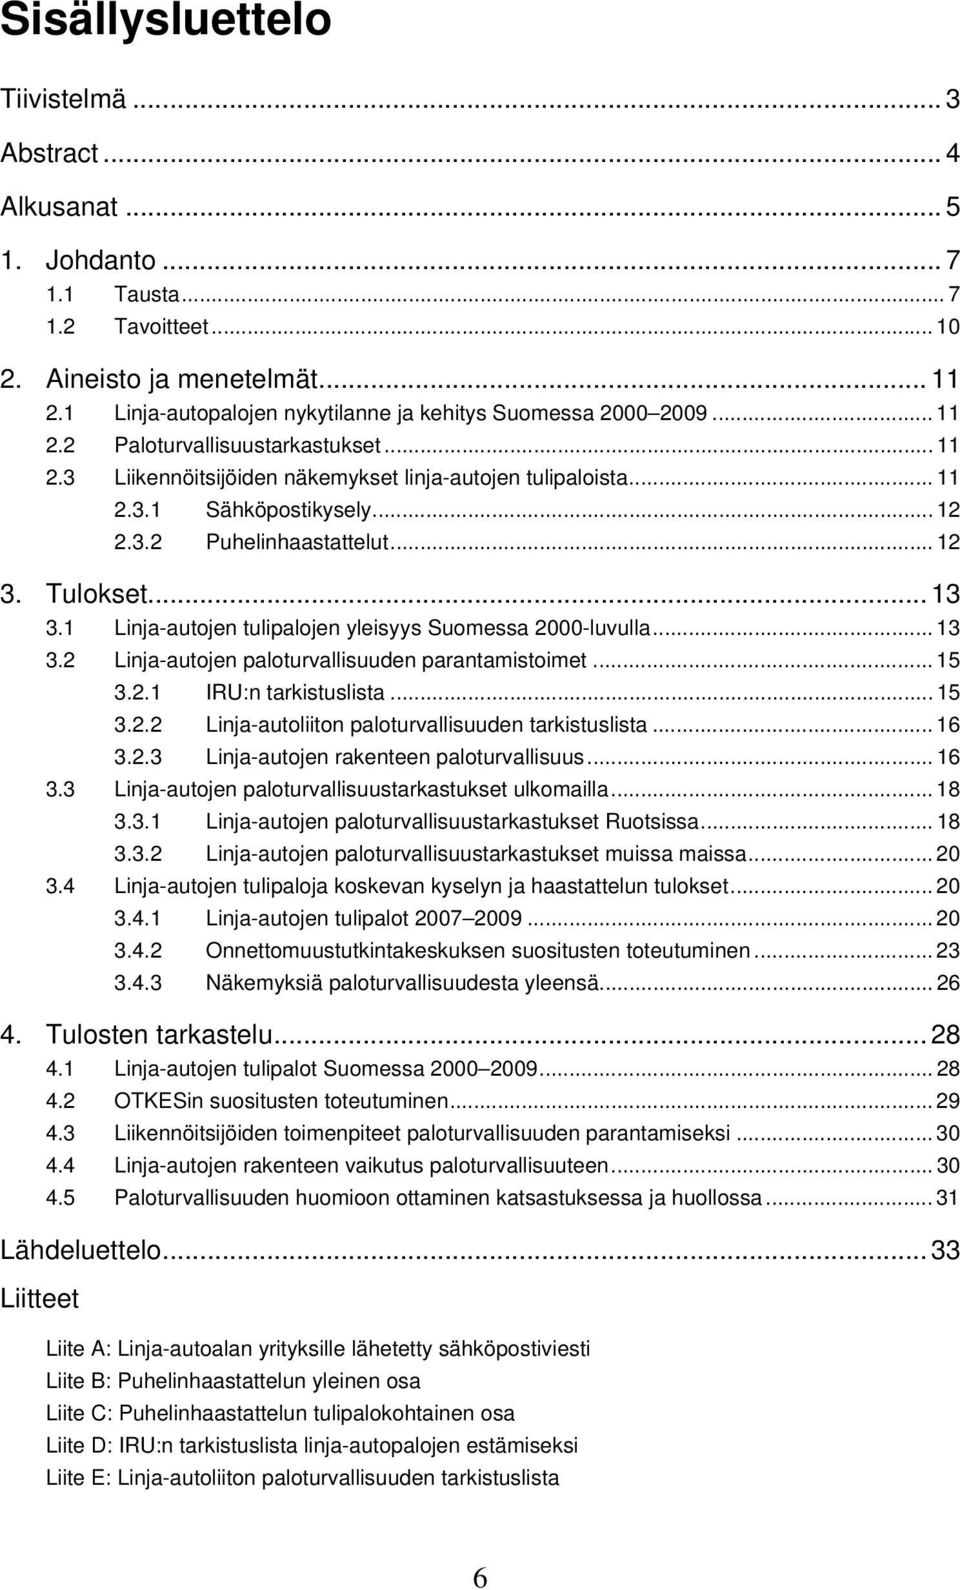 .. 12 2.3.2 Puhelinhaastattelut... 12 3. Tulokset... 13 3.1 Linja-autojen tulipalojen yleisyys Suomessa 2000-luvulla... 13 3.2 Linja-autojen paloturvallisuuden parantamistoimet... 15 3.2.1 IRU:n tarkistuslista.